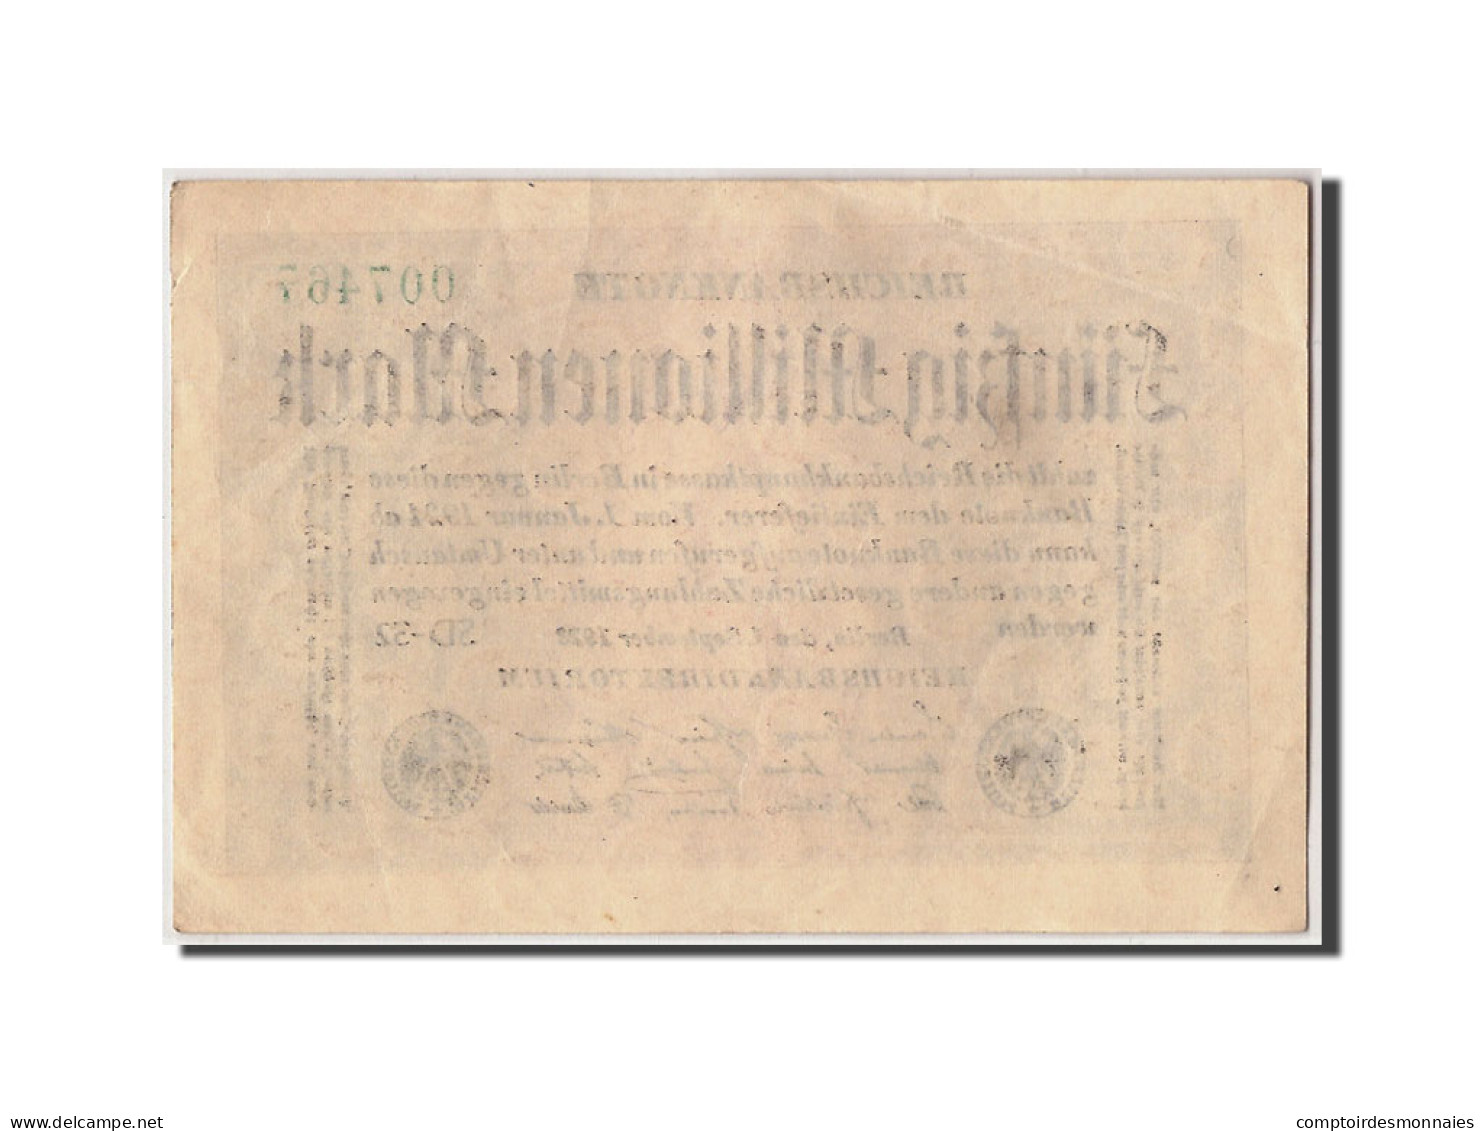 Billet, Allemagne, 50 Millionen Mark, 1923, 1923-09-01, KM:109c, SUP - 50 Mio. Mark